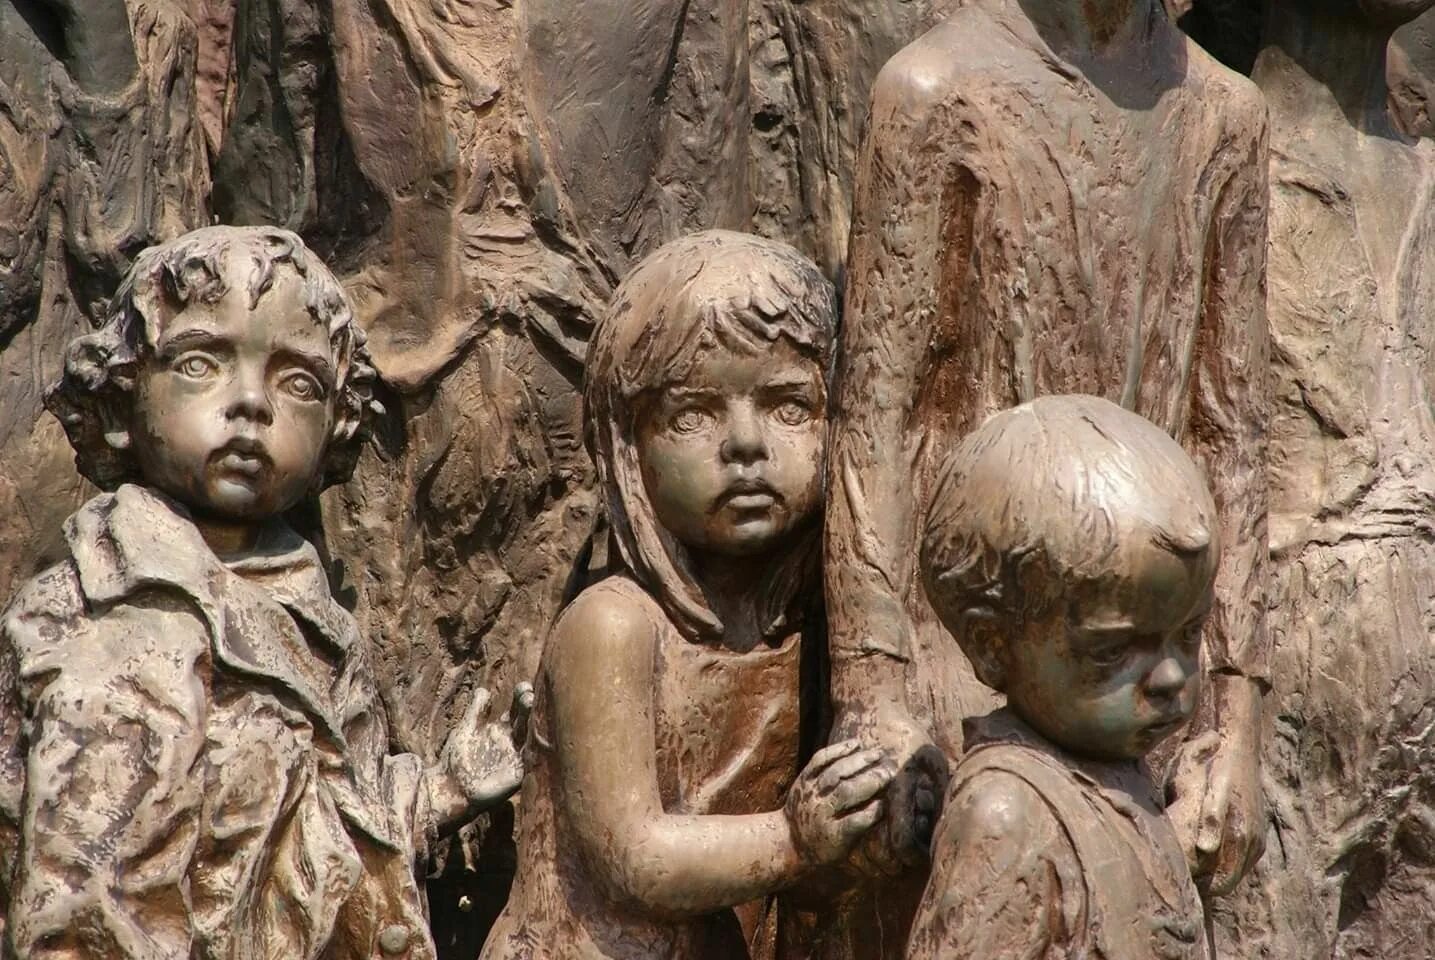 Памятник детям в Лидице. Памятник 82 детям Лидице Чехия. Памятник 82 детям, убитым нацистами в Лидице. Мемориал погибшим детям Чехия Лидица.